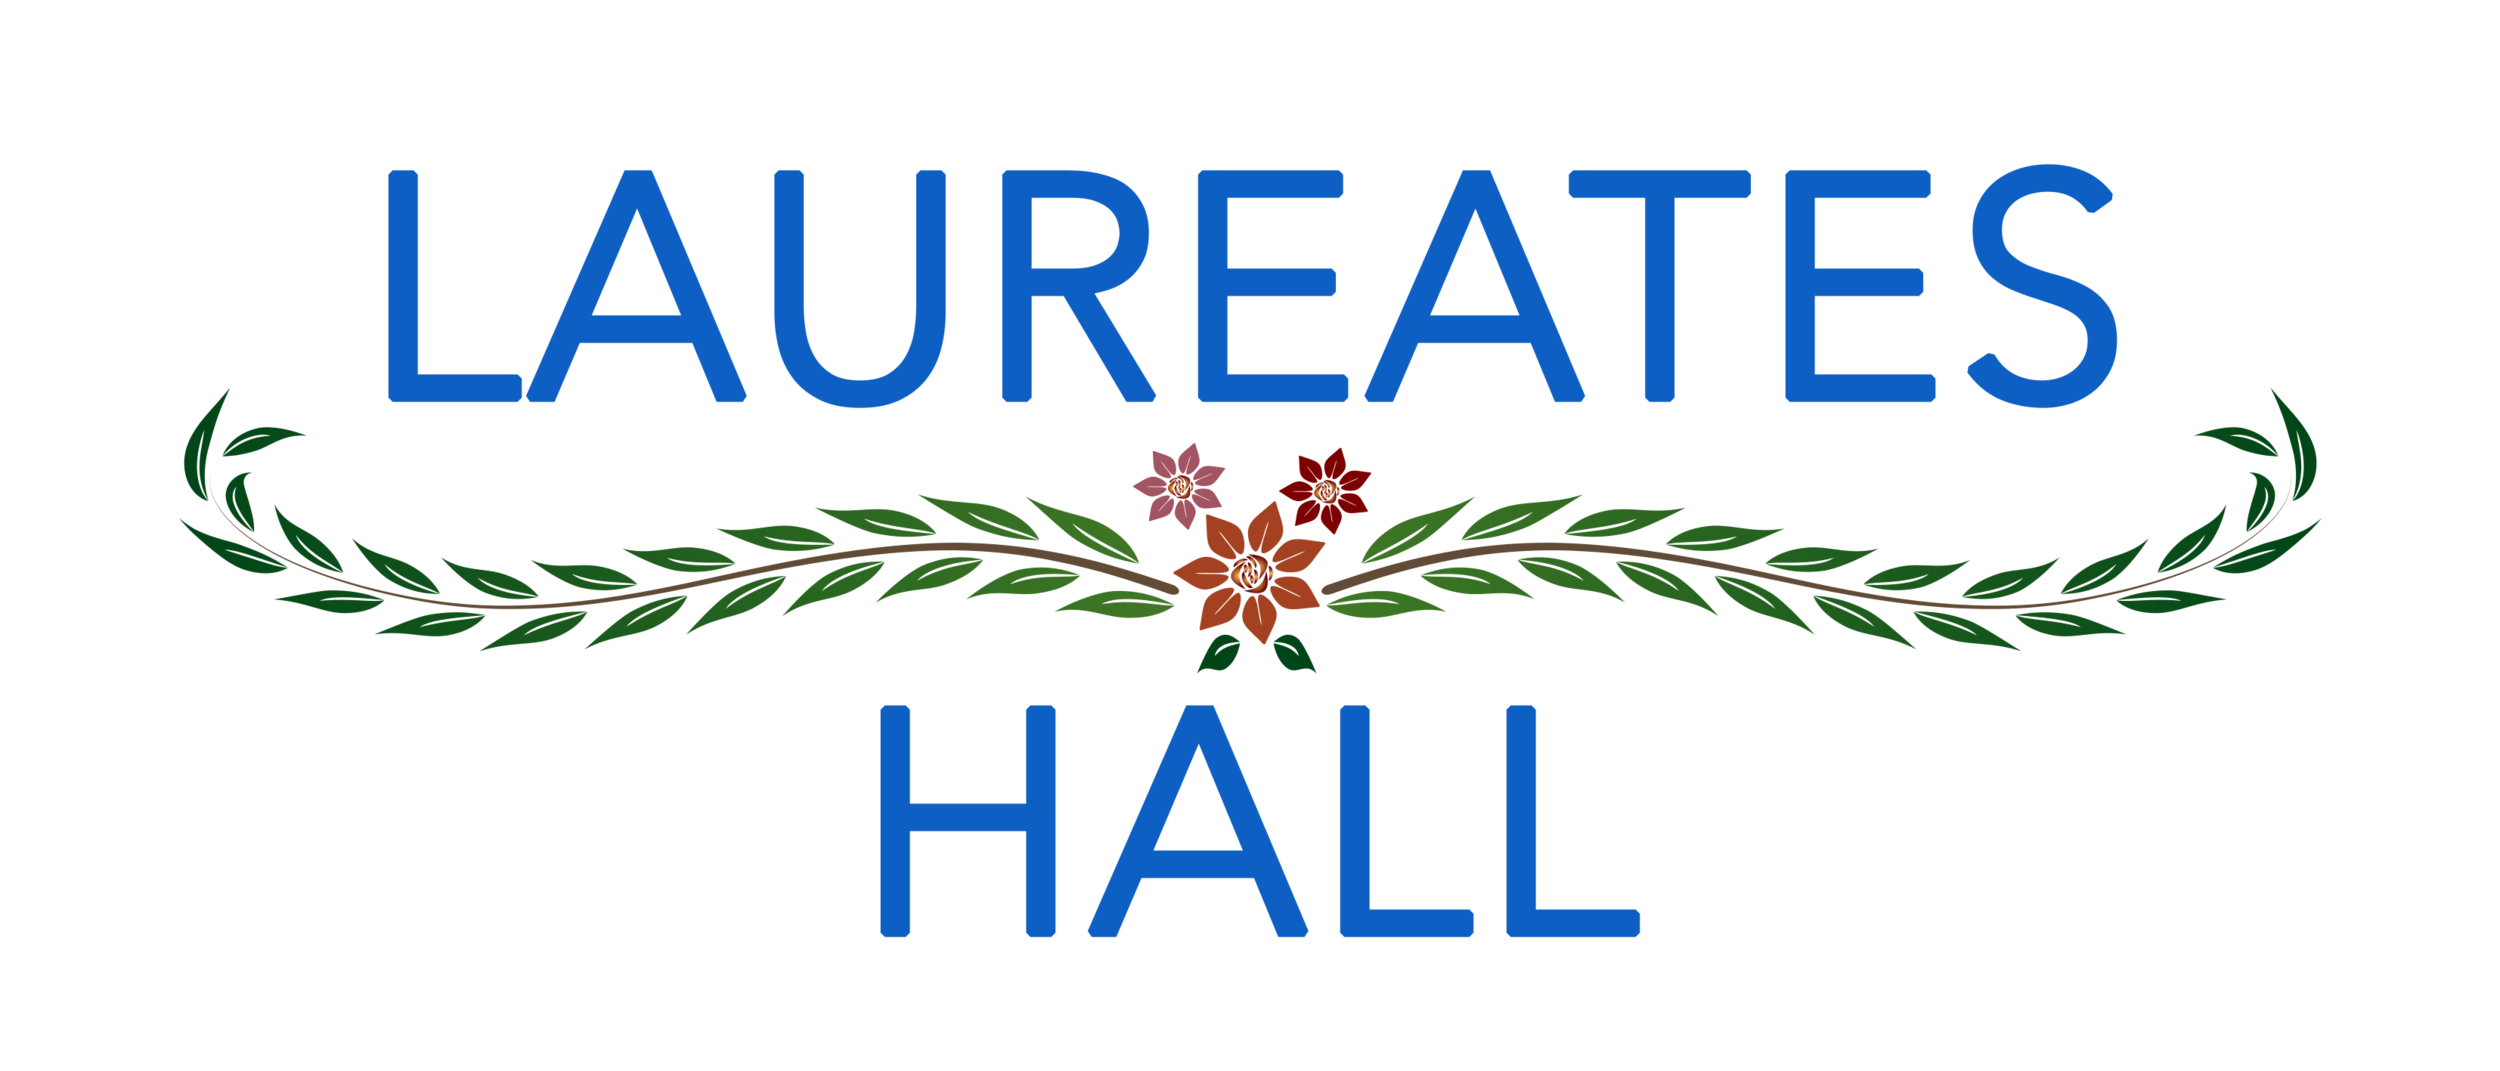 Laureates Hall